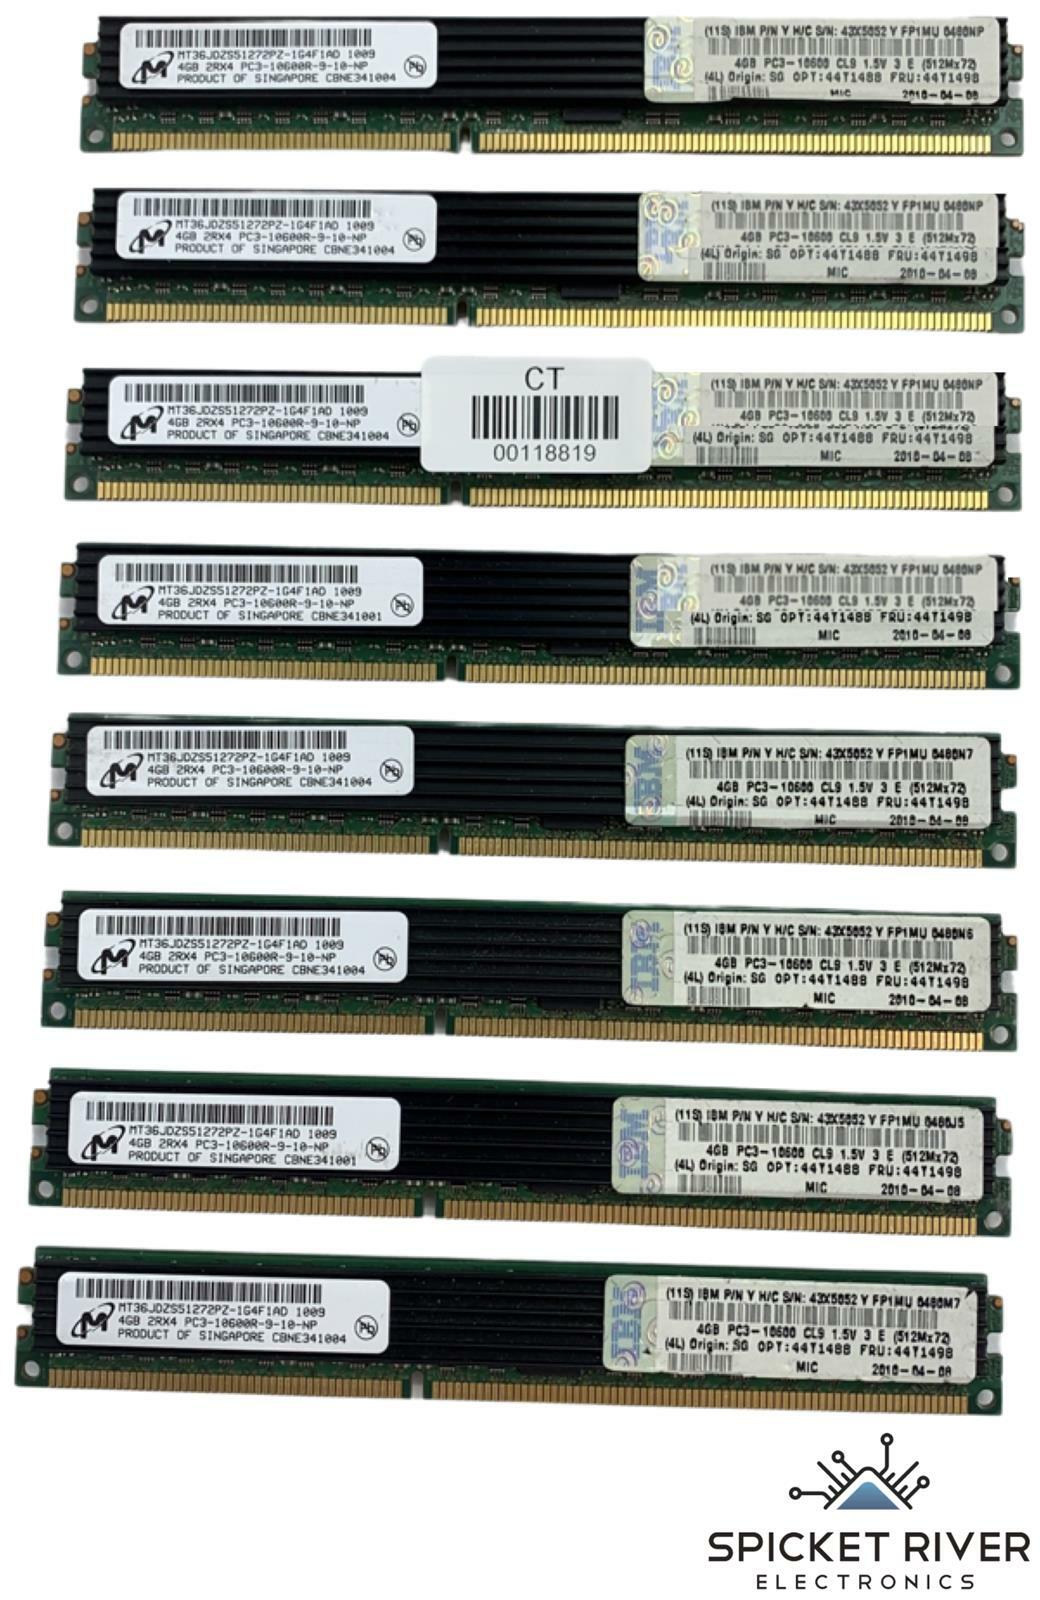 Lot of 8 - Micron MT36JDZS51272PZ-1G4F1AD 4GB DDR3 SDRAM PC3-10600 RAM Memory